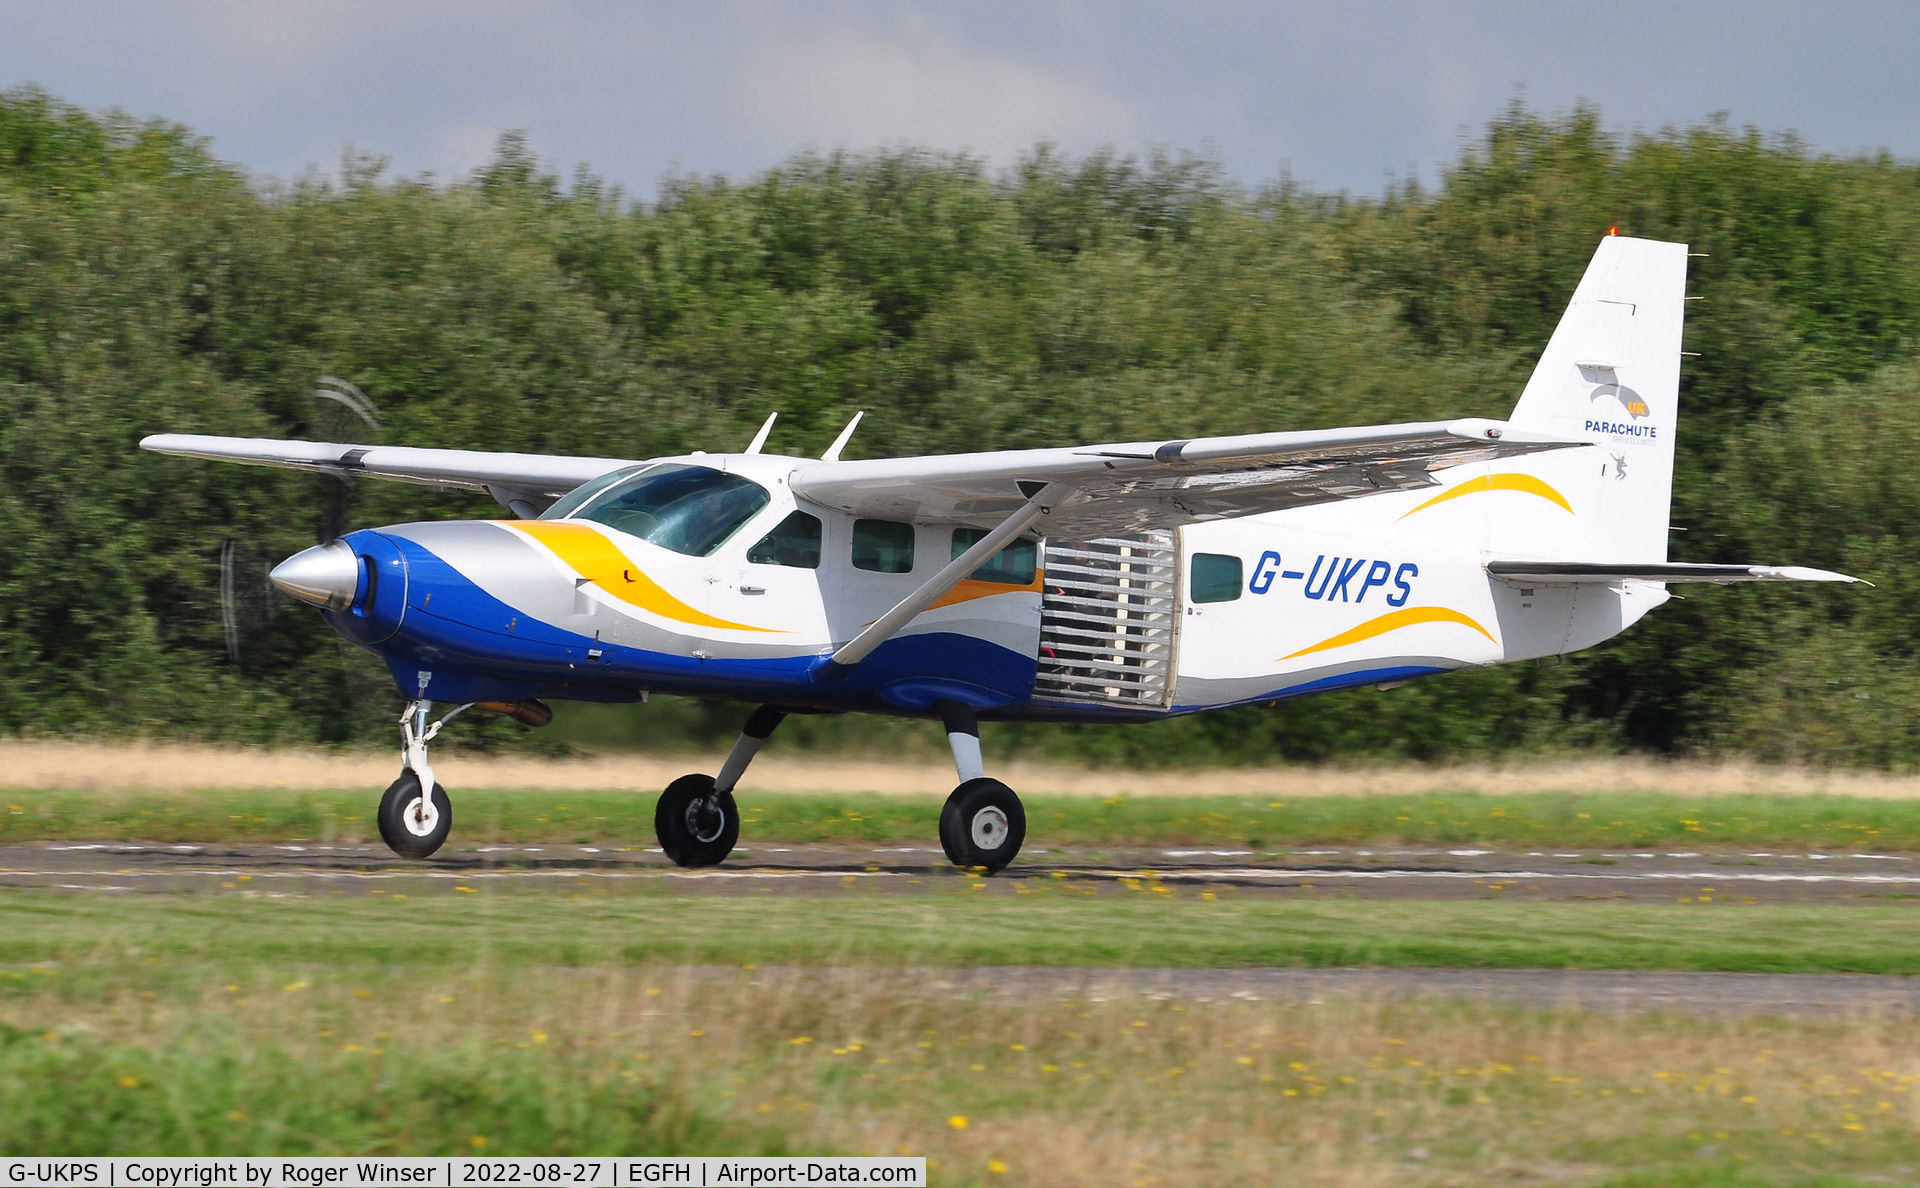 G-UKPS, 2007 Cessna 208 Caravan 1 C/N 20800423, Resident Caravan 1 operated by Skydive Swansea.